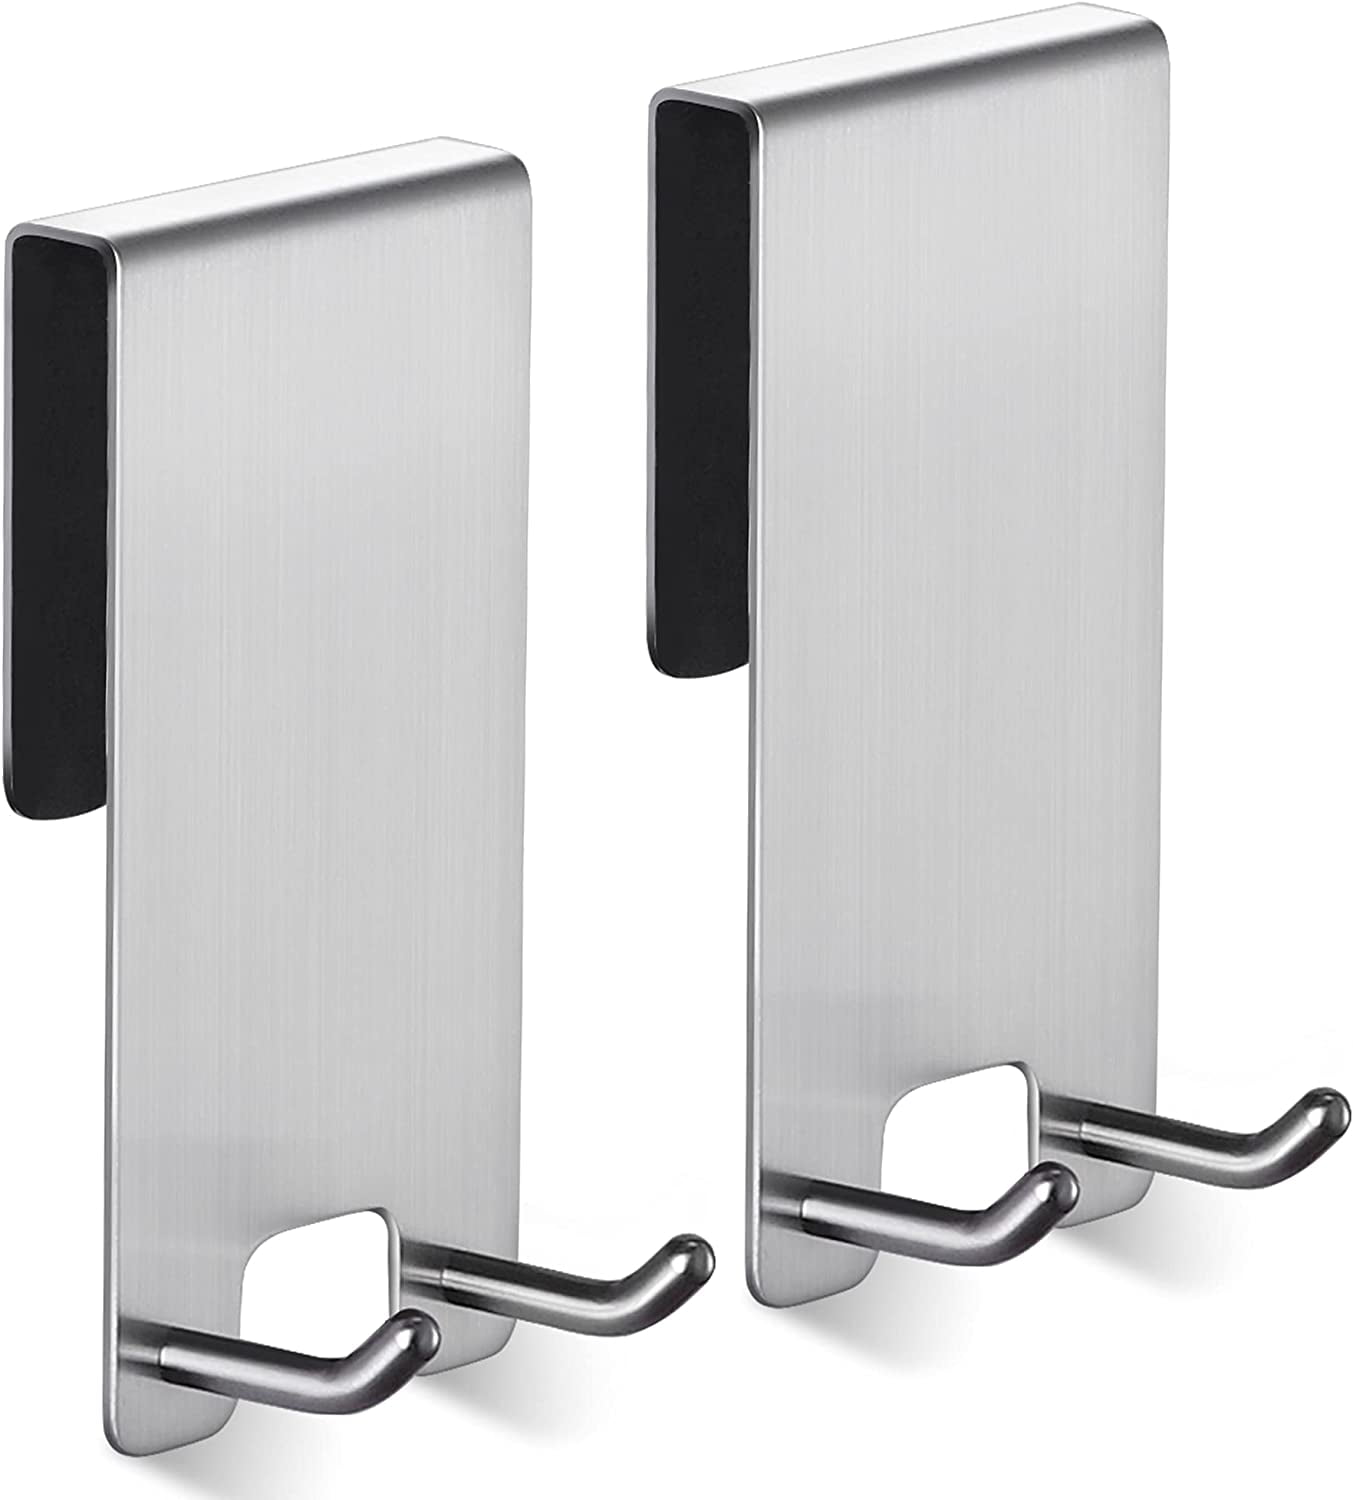 Silver Details about   6 PCS Over The Door Hooks,Heavy Duty Door Hanger and Single Door Hook 